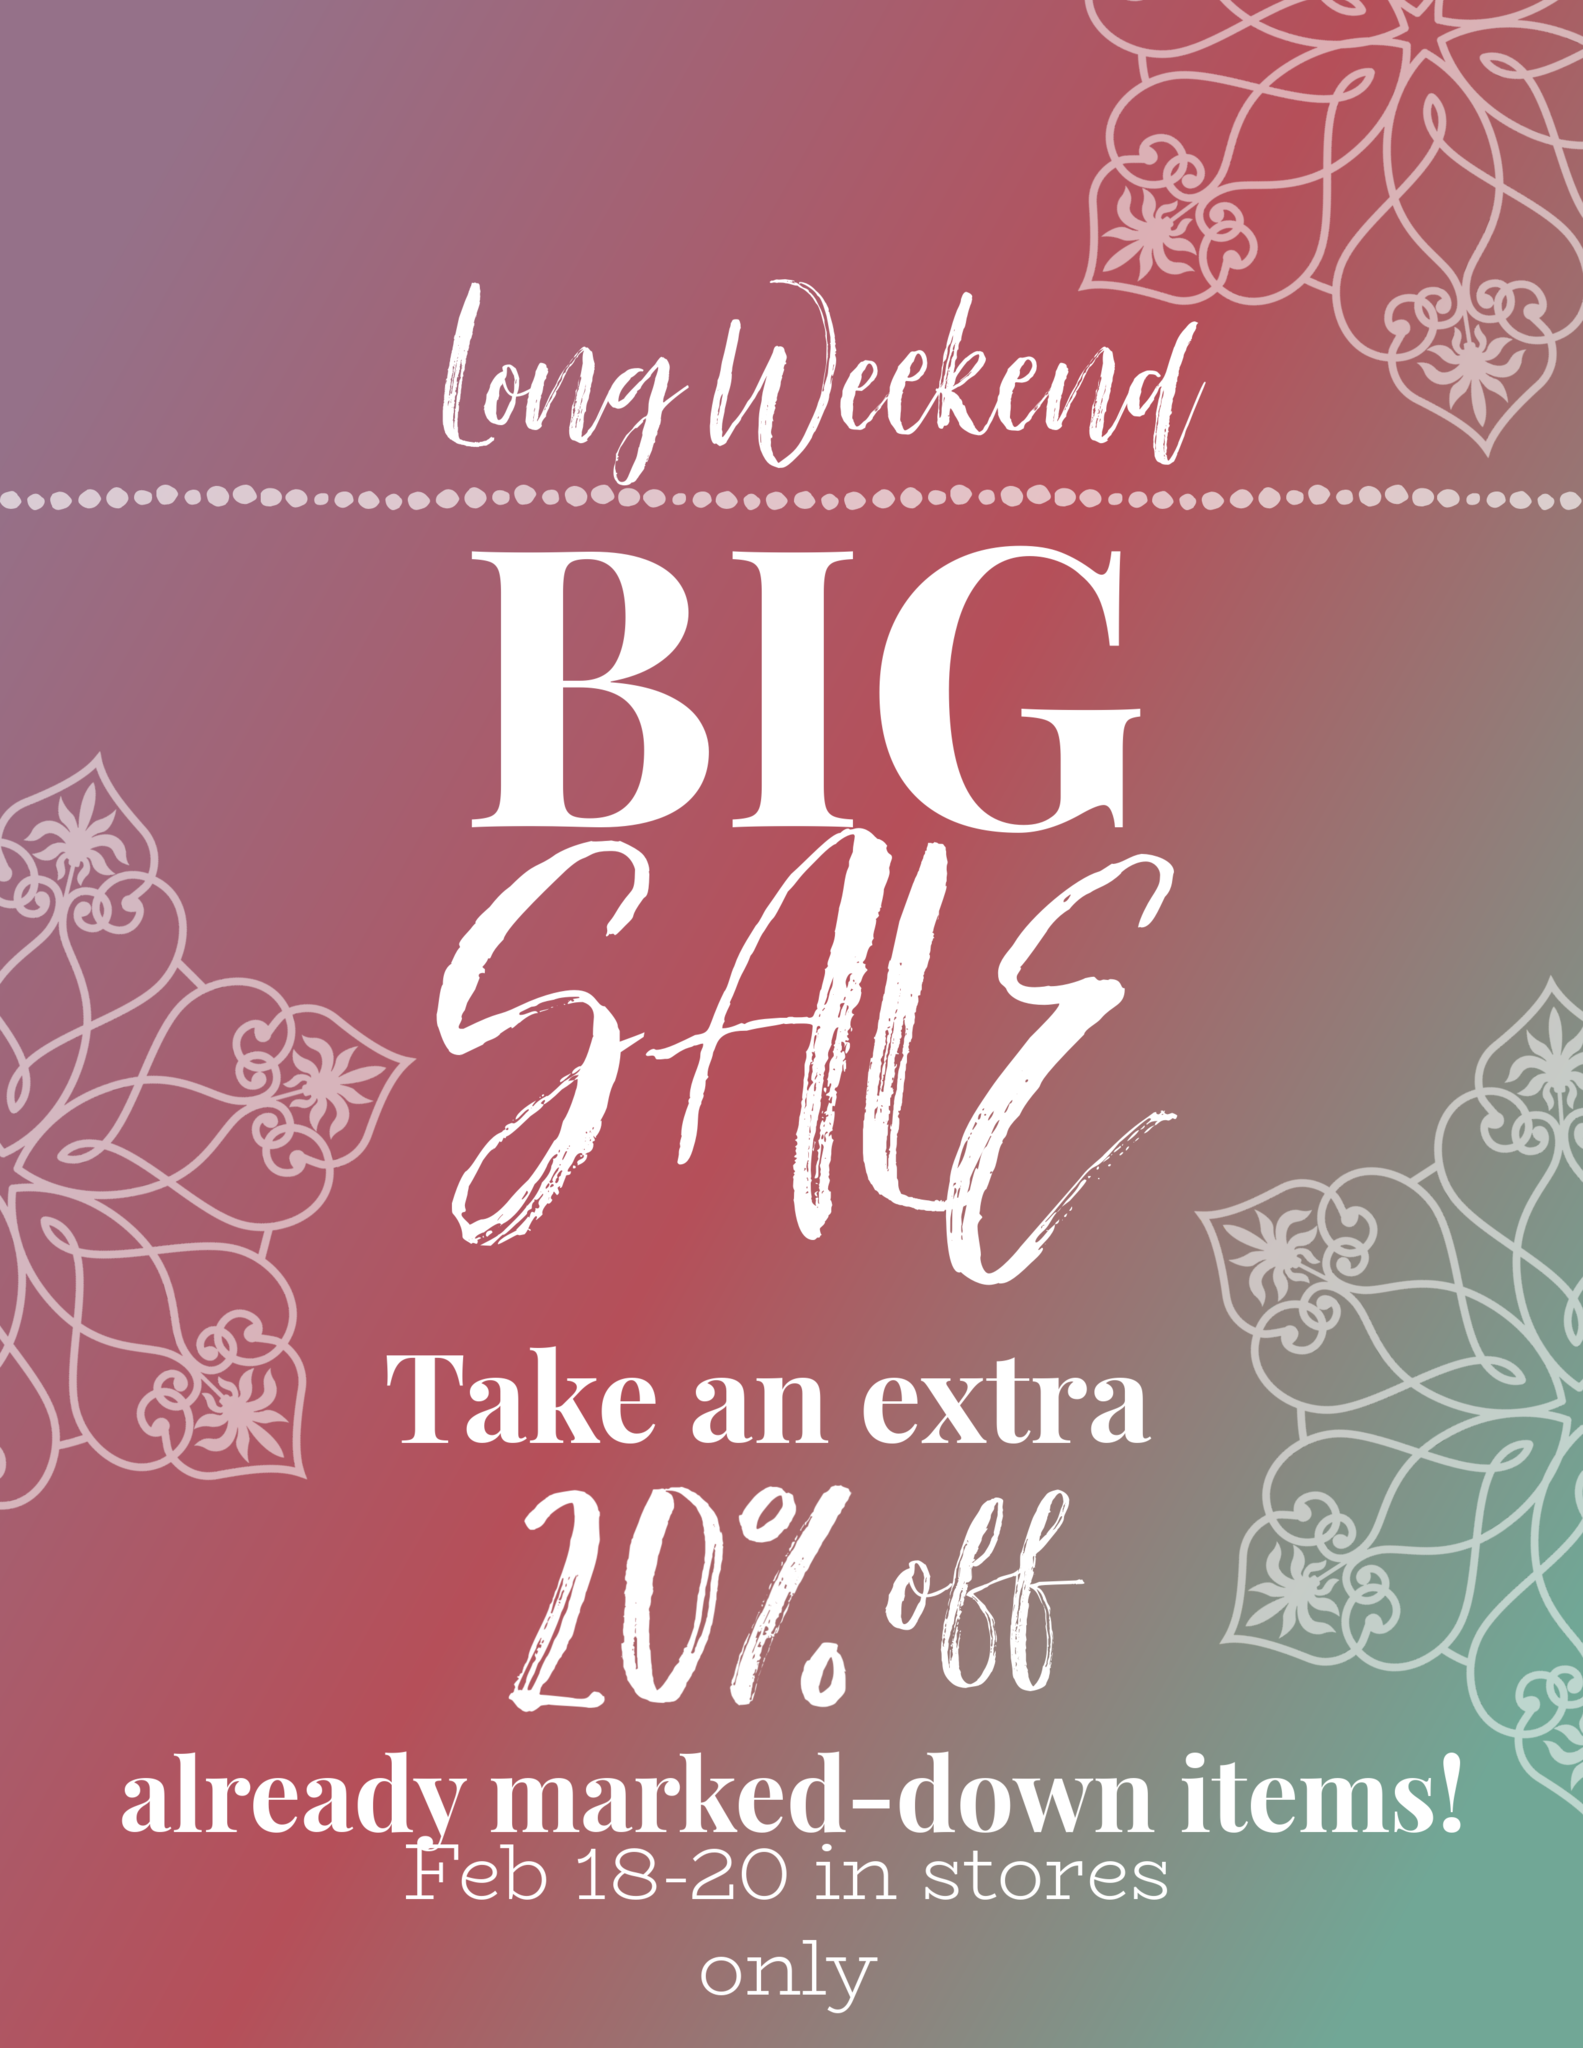 long weekend sale